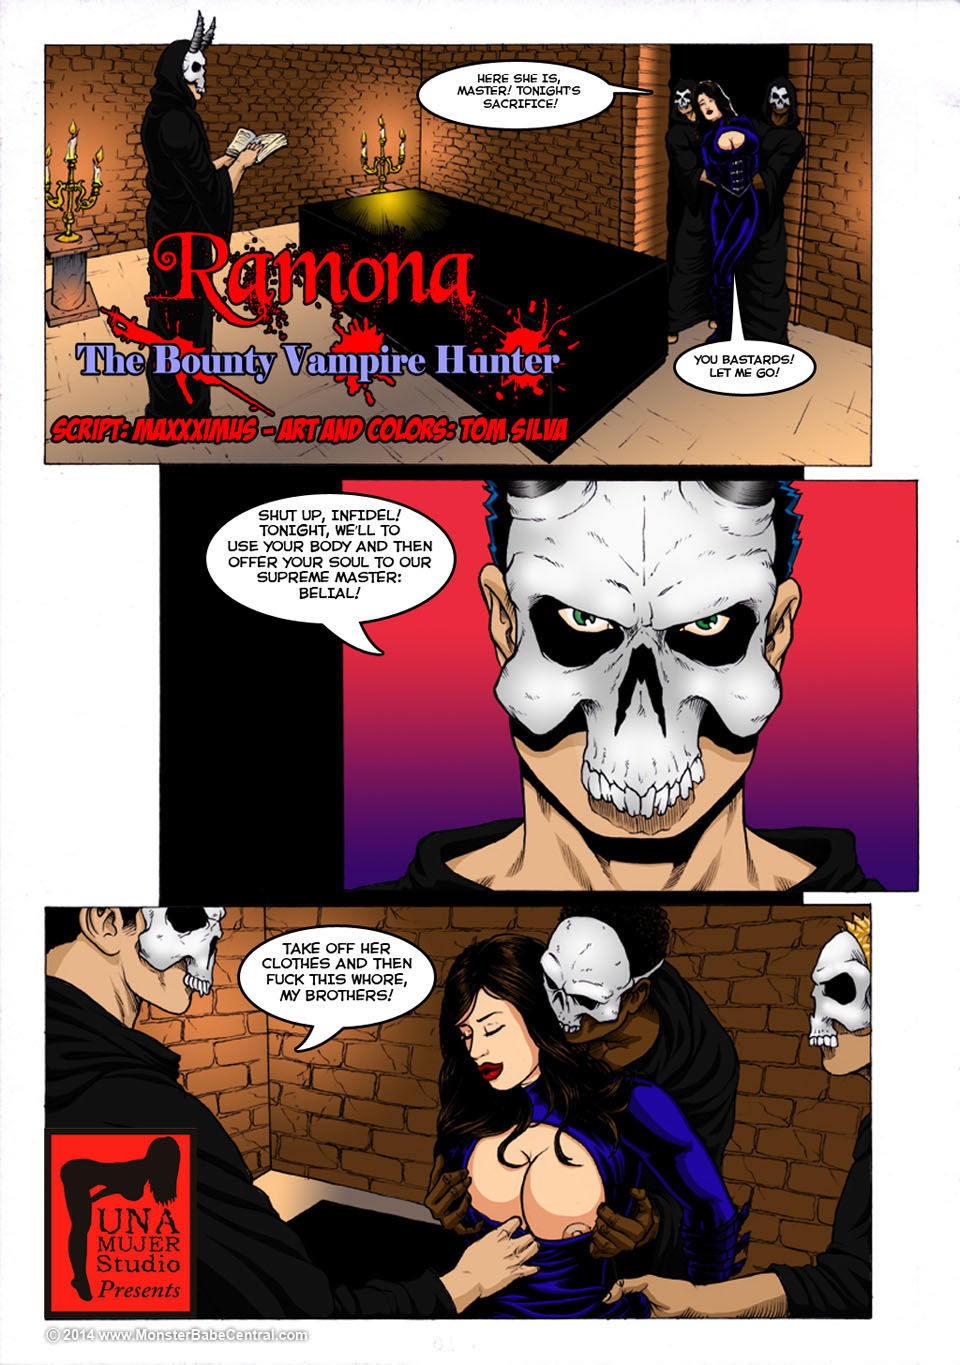 Ramona The Bounty Vampire Hunter page 1